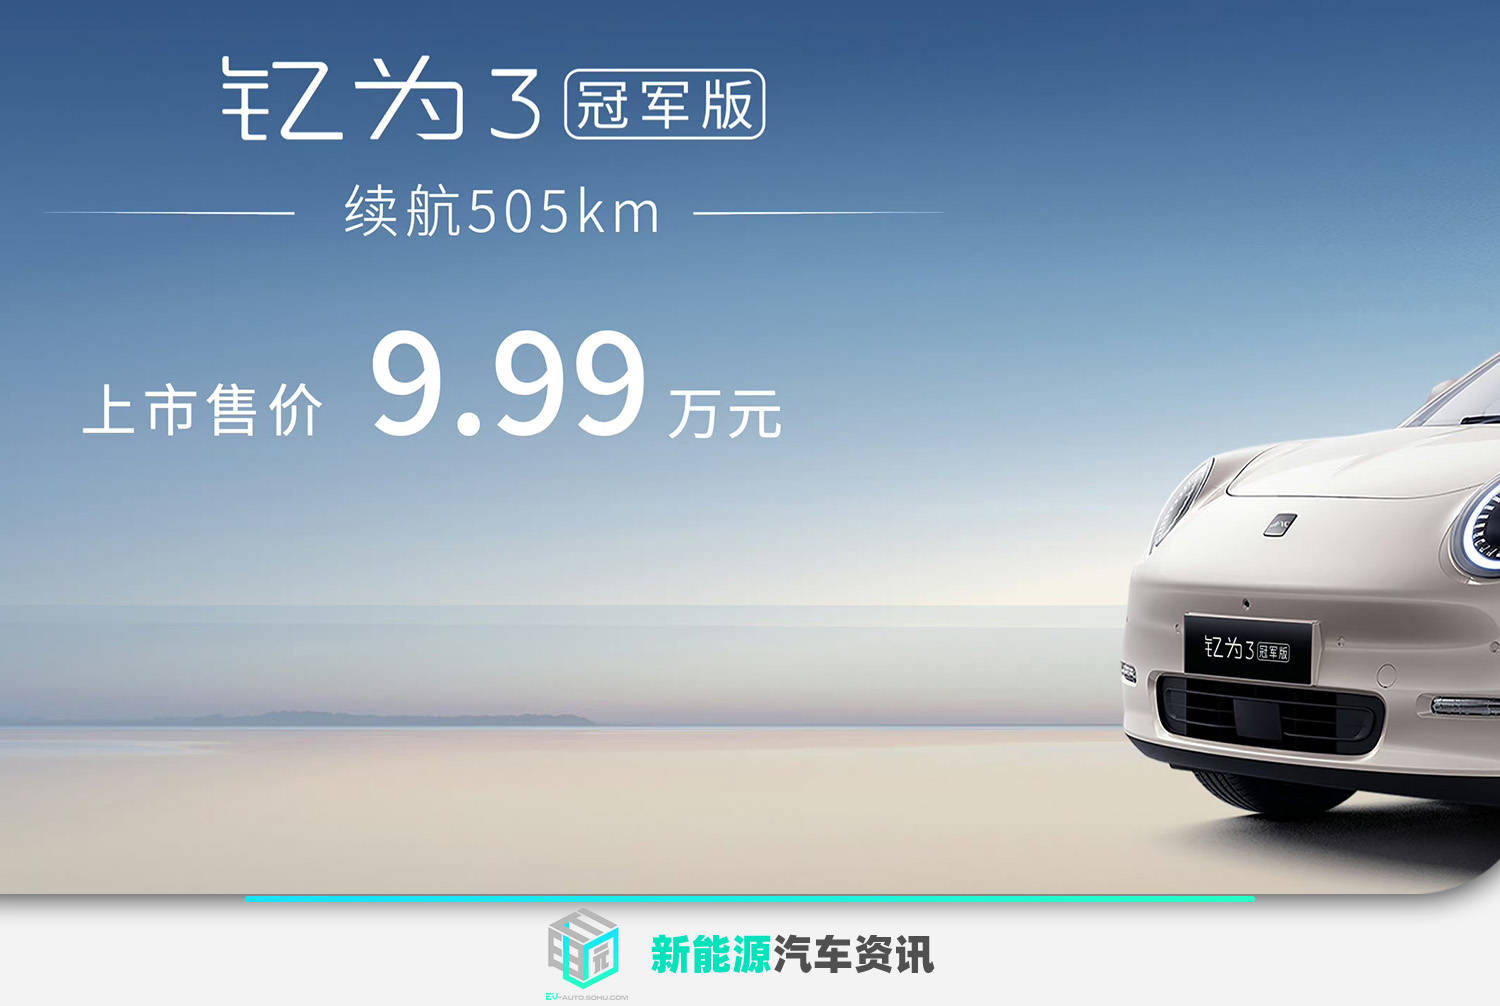 官方指导价9.99万元 江淮钇为3冠军版正式上市